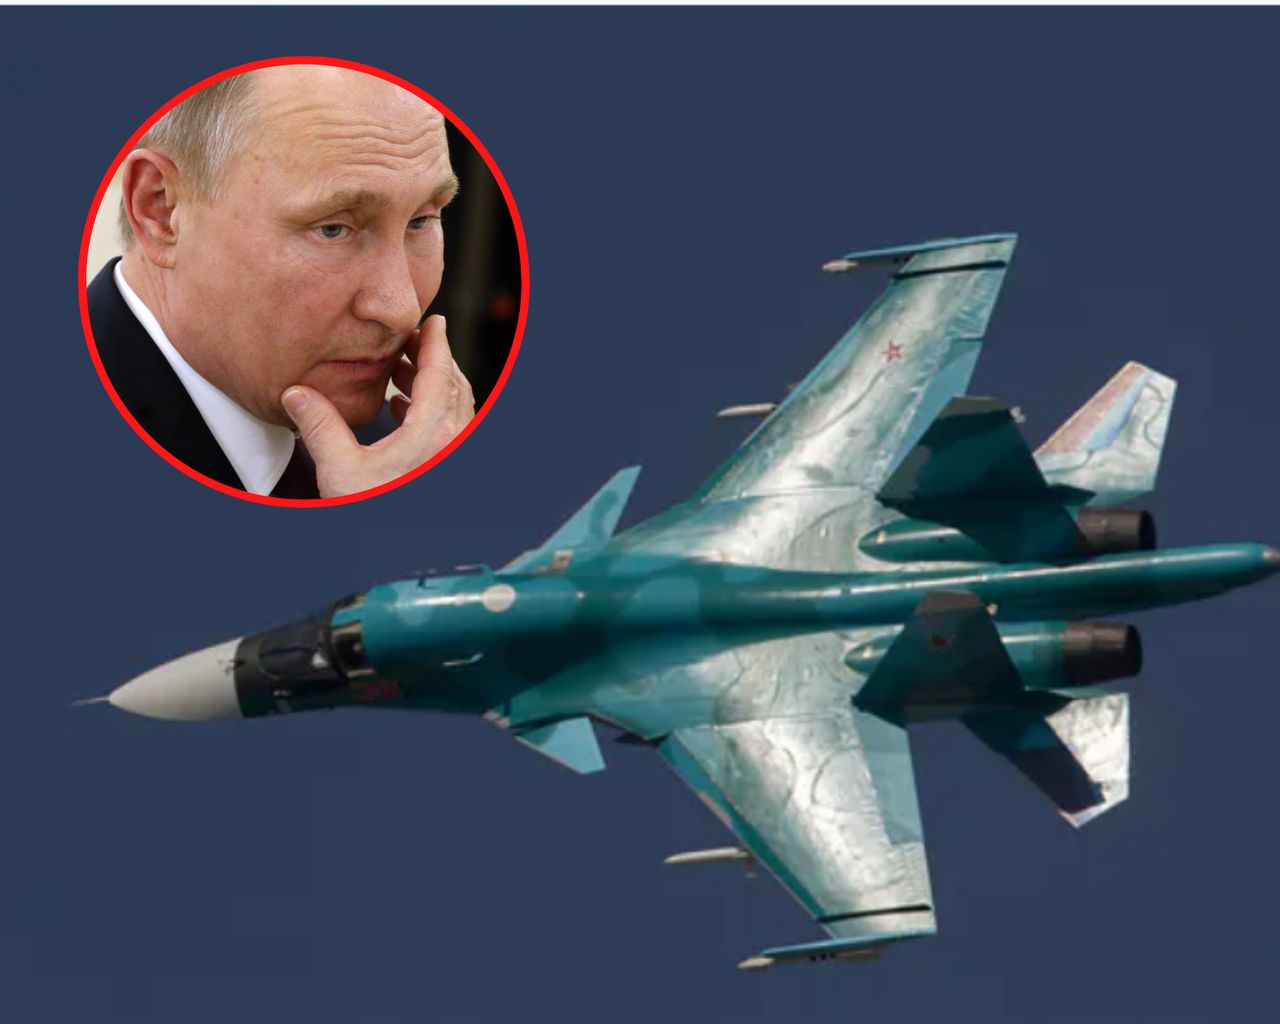 Putin traci cenne samoloty. Tyle lat może zająć odrobienie strat